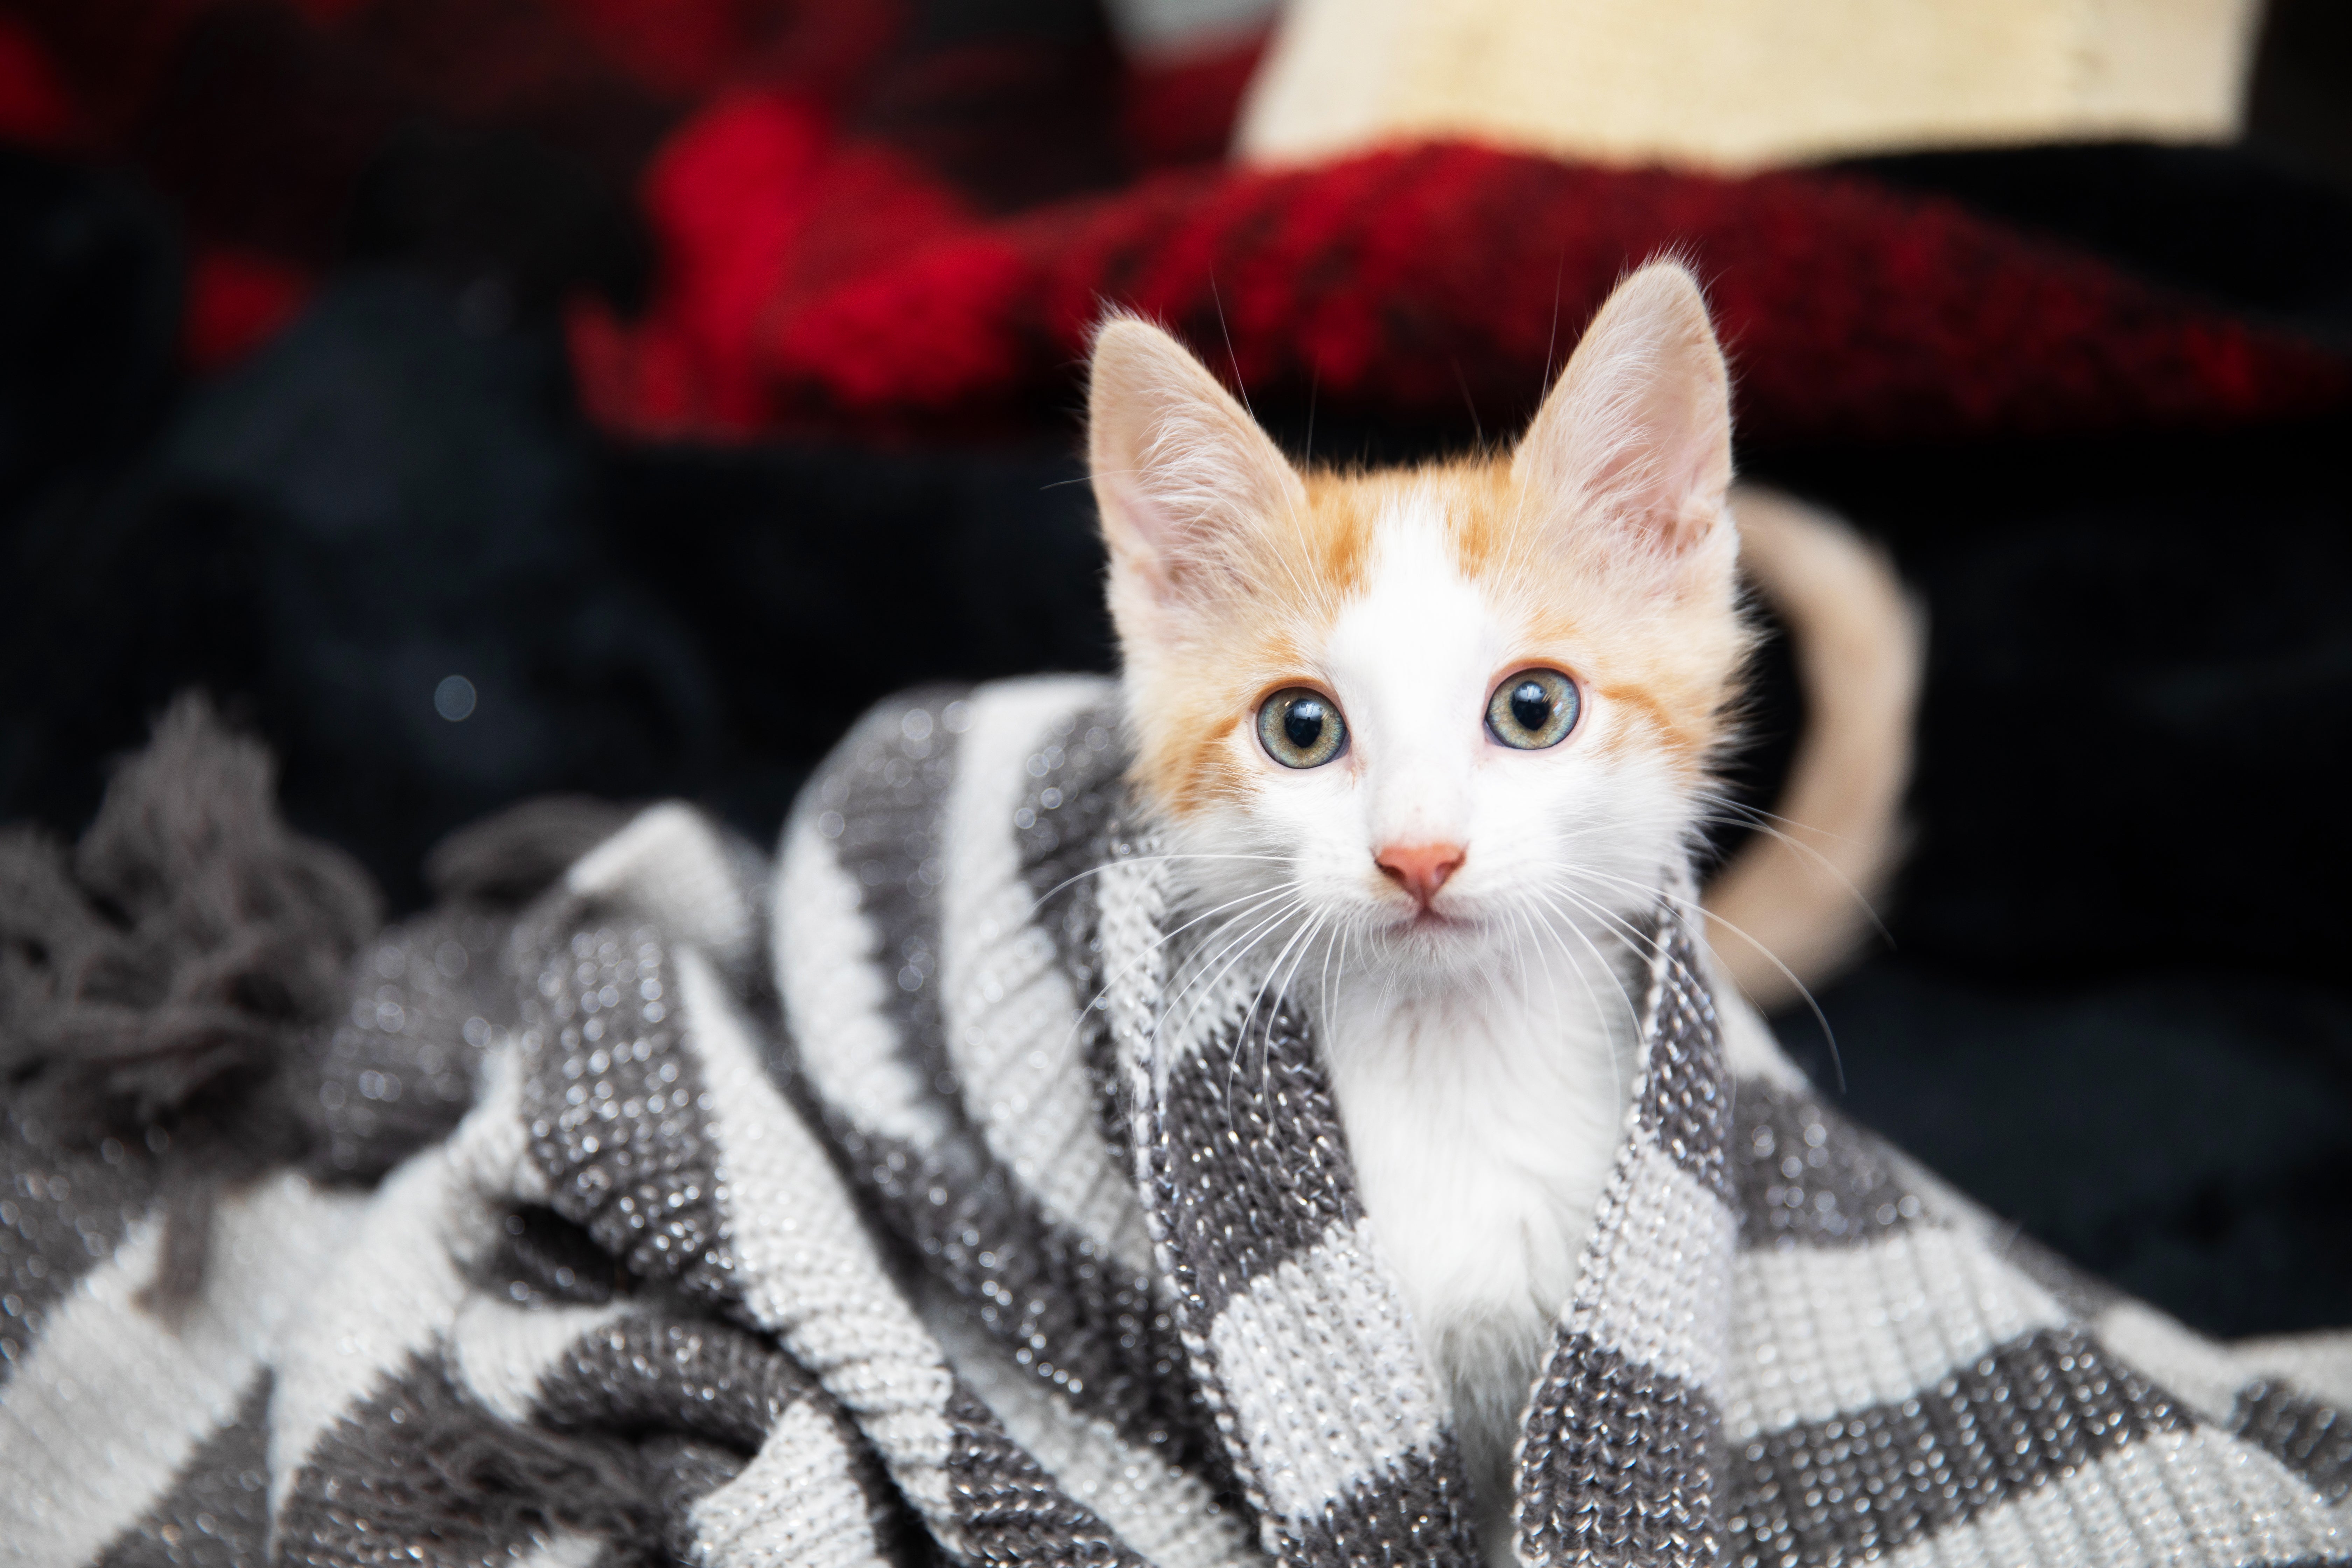 Tiny kitten relaxing in a cozy blanket